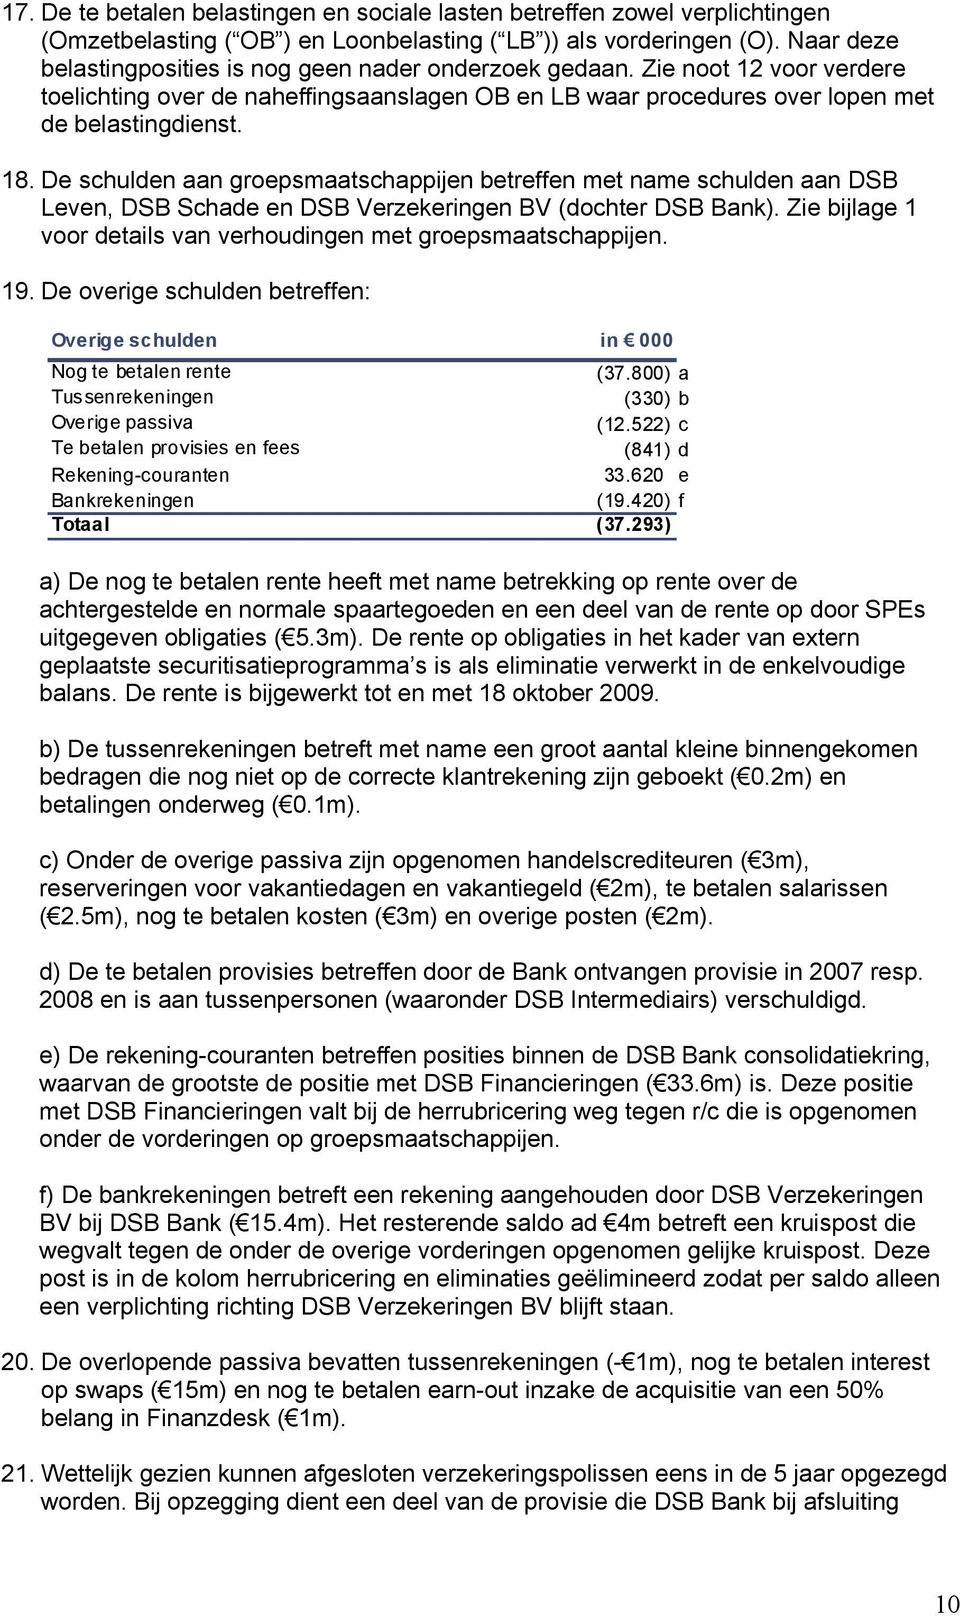 De schulden aan groepsmaatschappijen betreffen met name schulden aan DSB Leven, DSB Schade en DSB Verzekeringen BV (dochter DSB Bank).